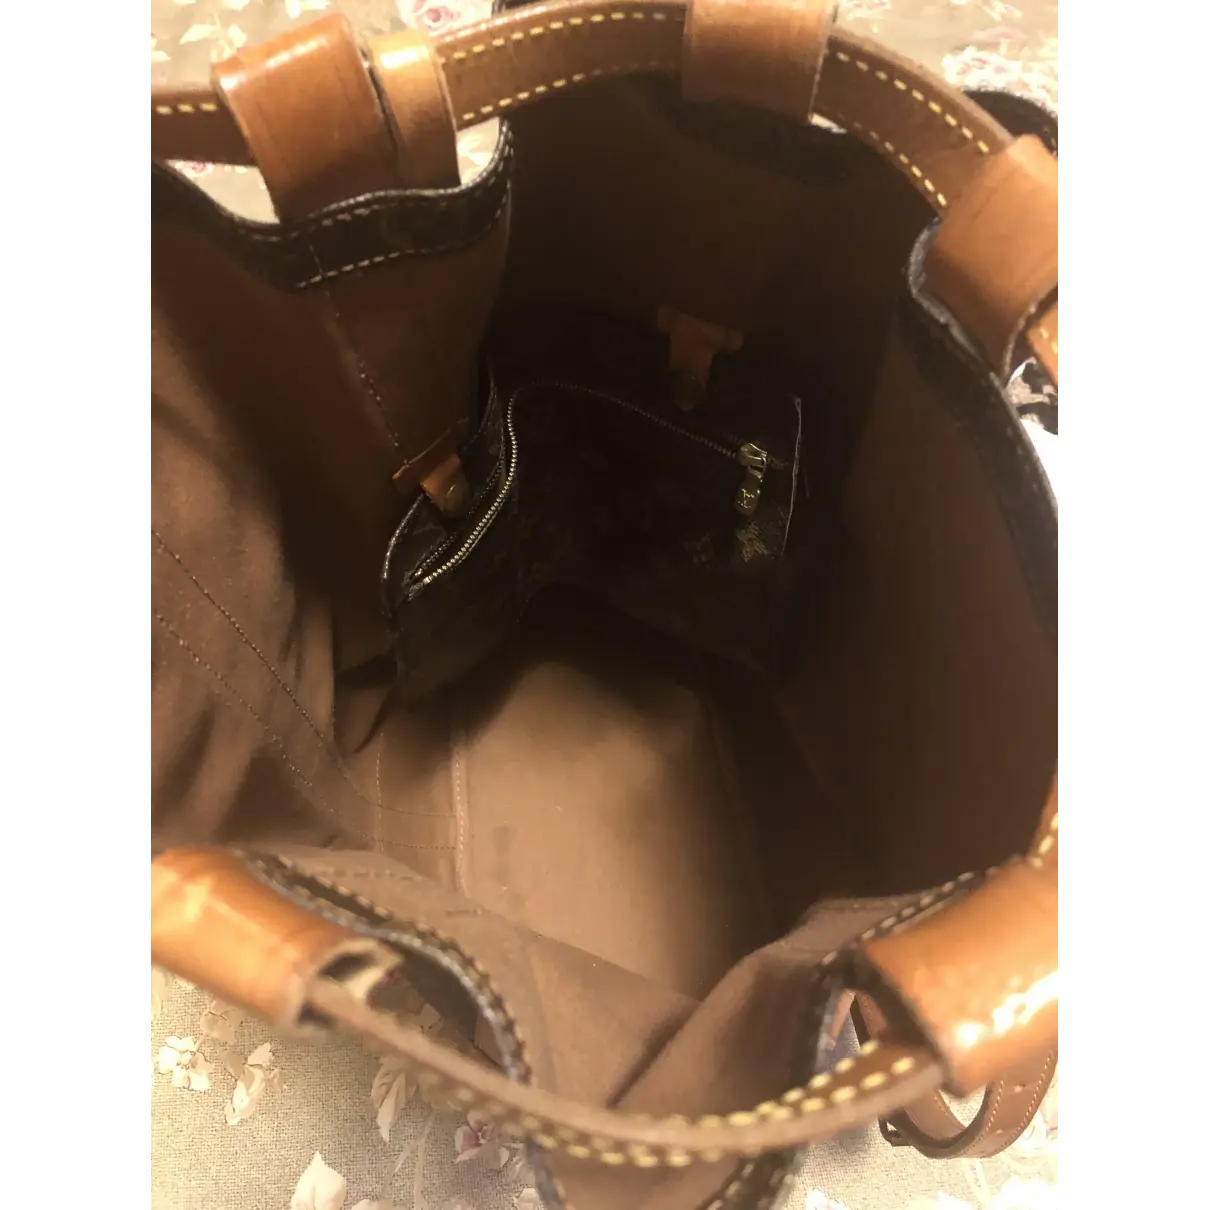 Randonnée cloth backpack Louis Vuitton